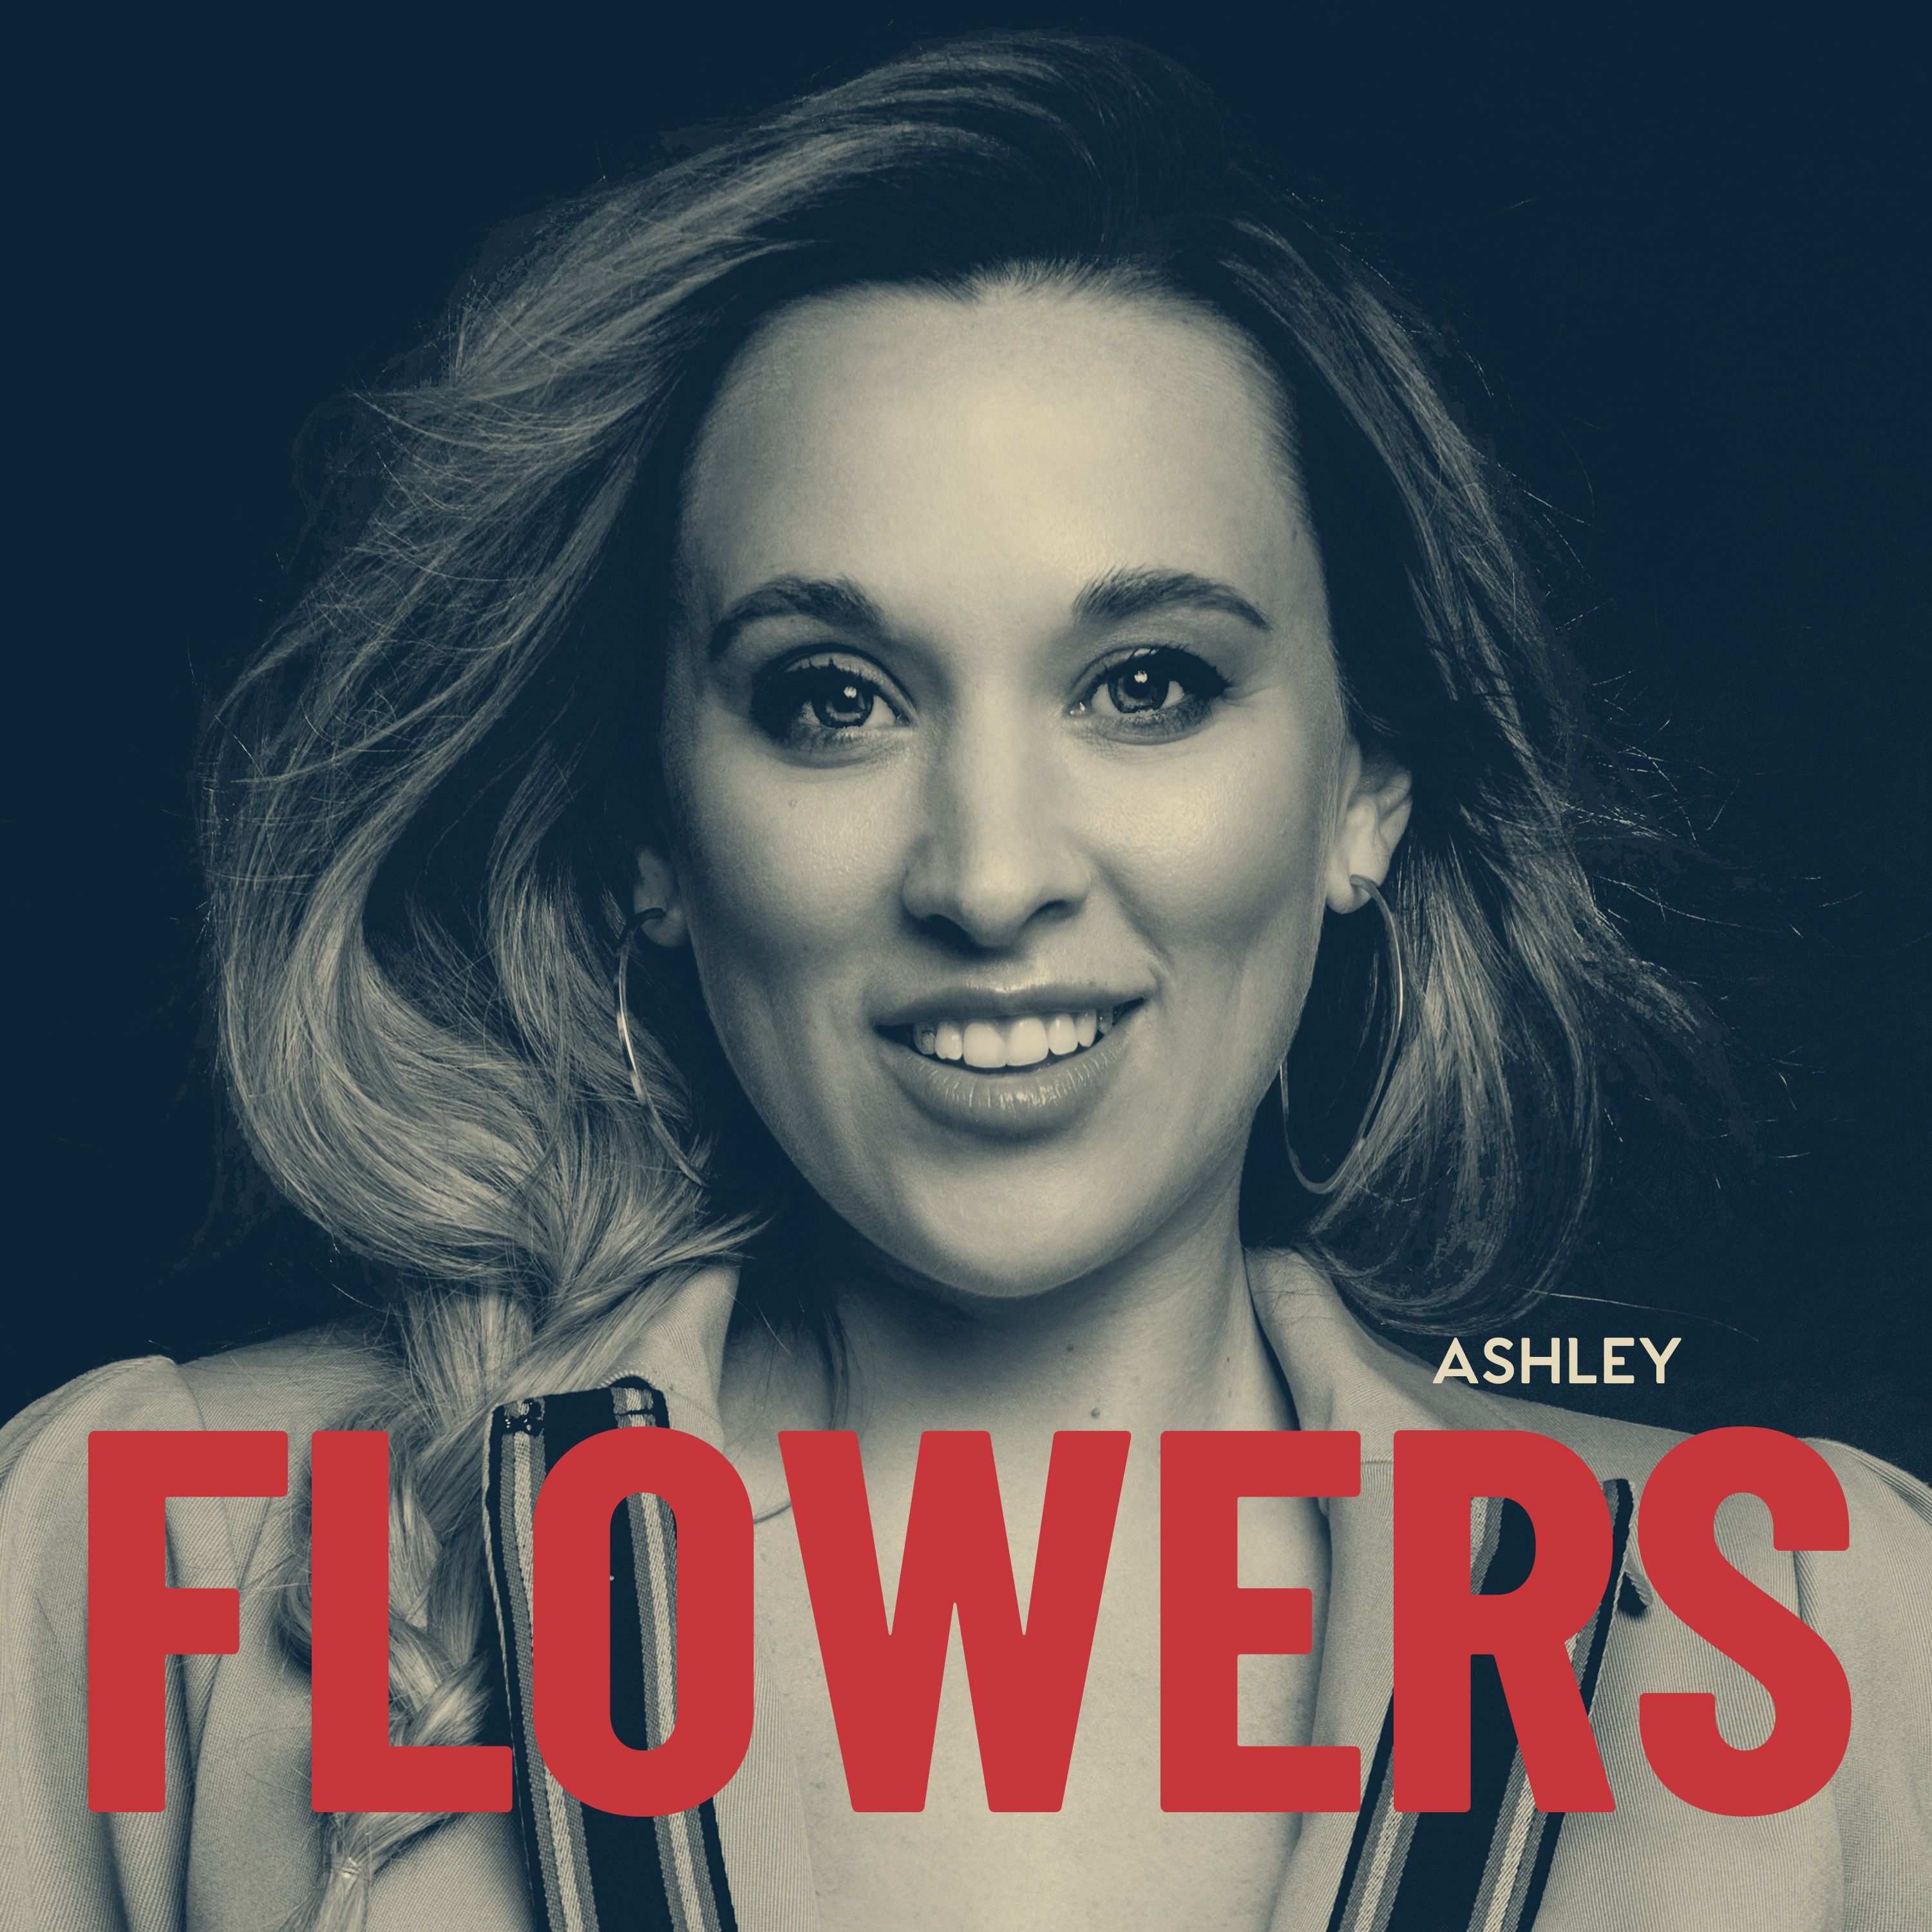 Ashley Flowers